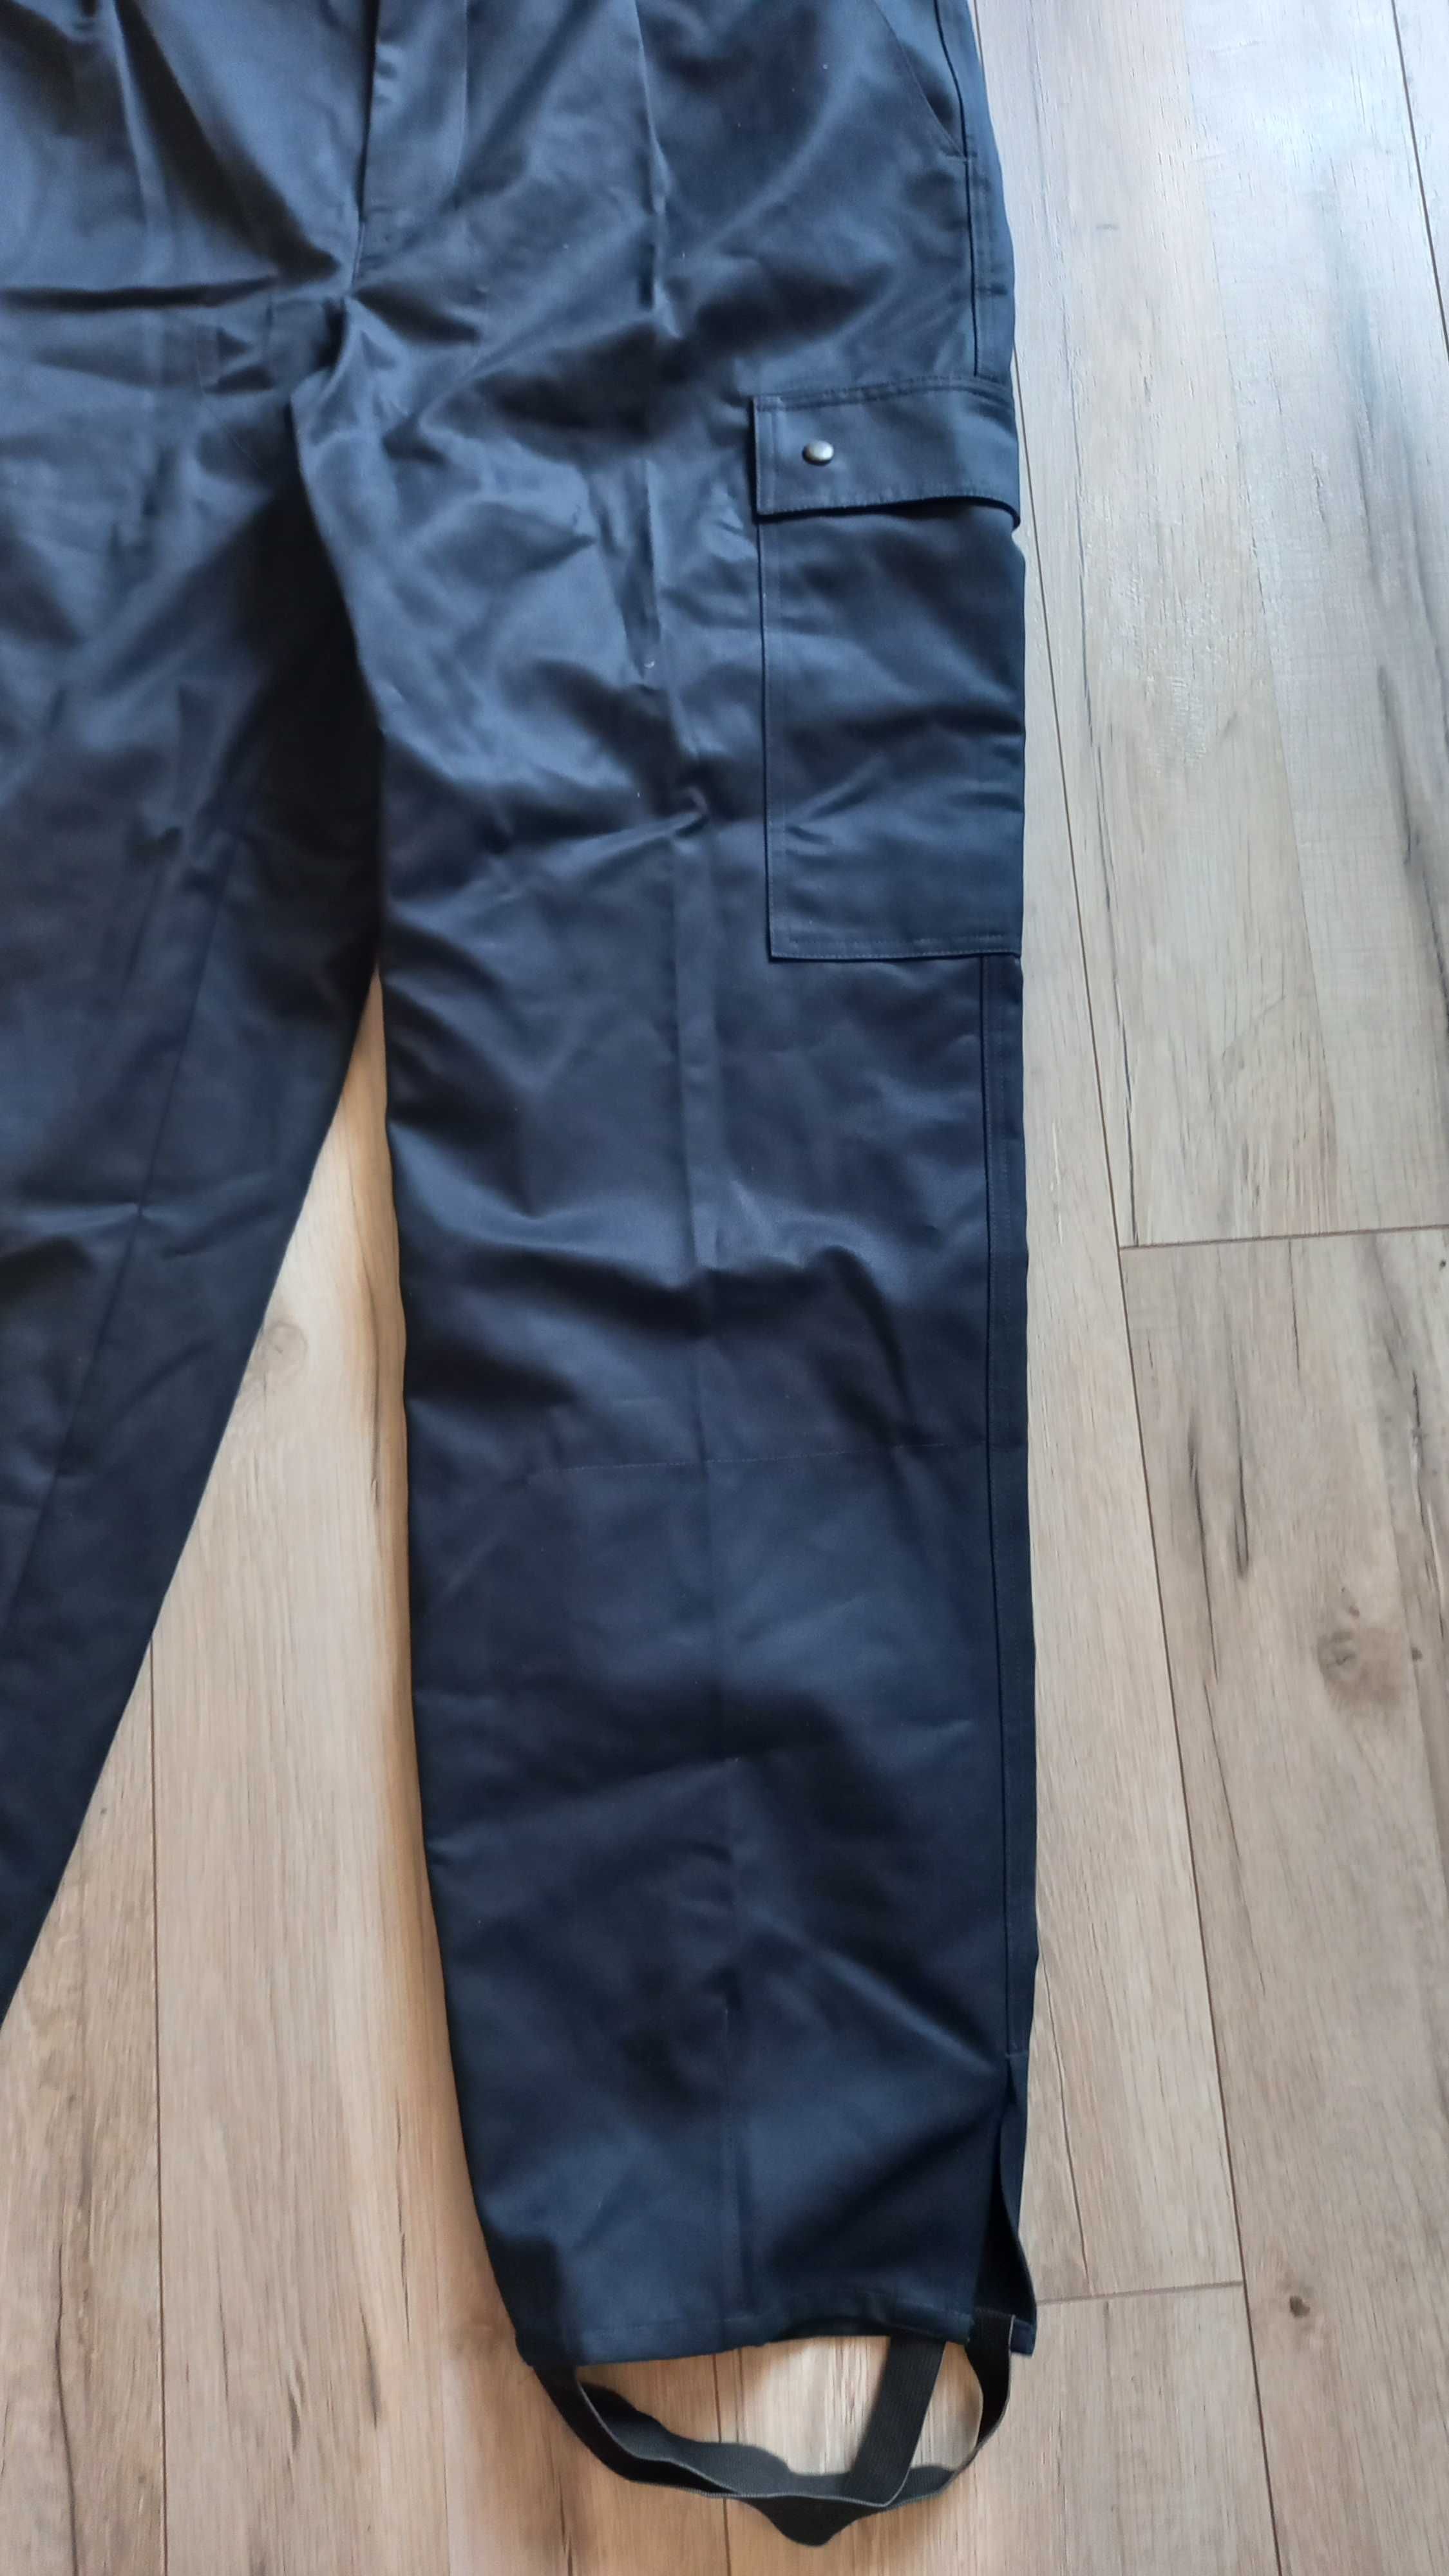 SARI spodnie robocze specjalne r. L/XL nowe